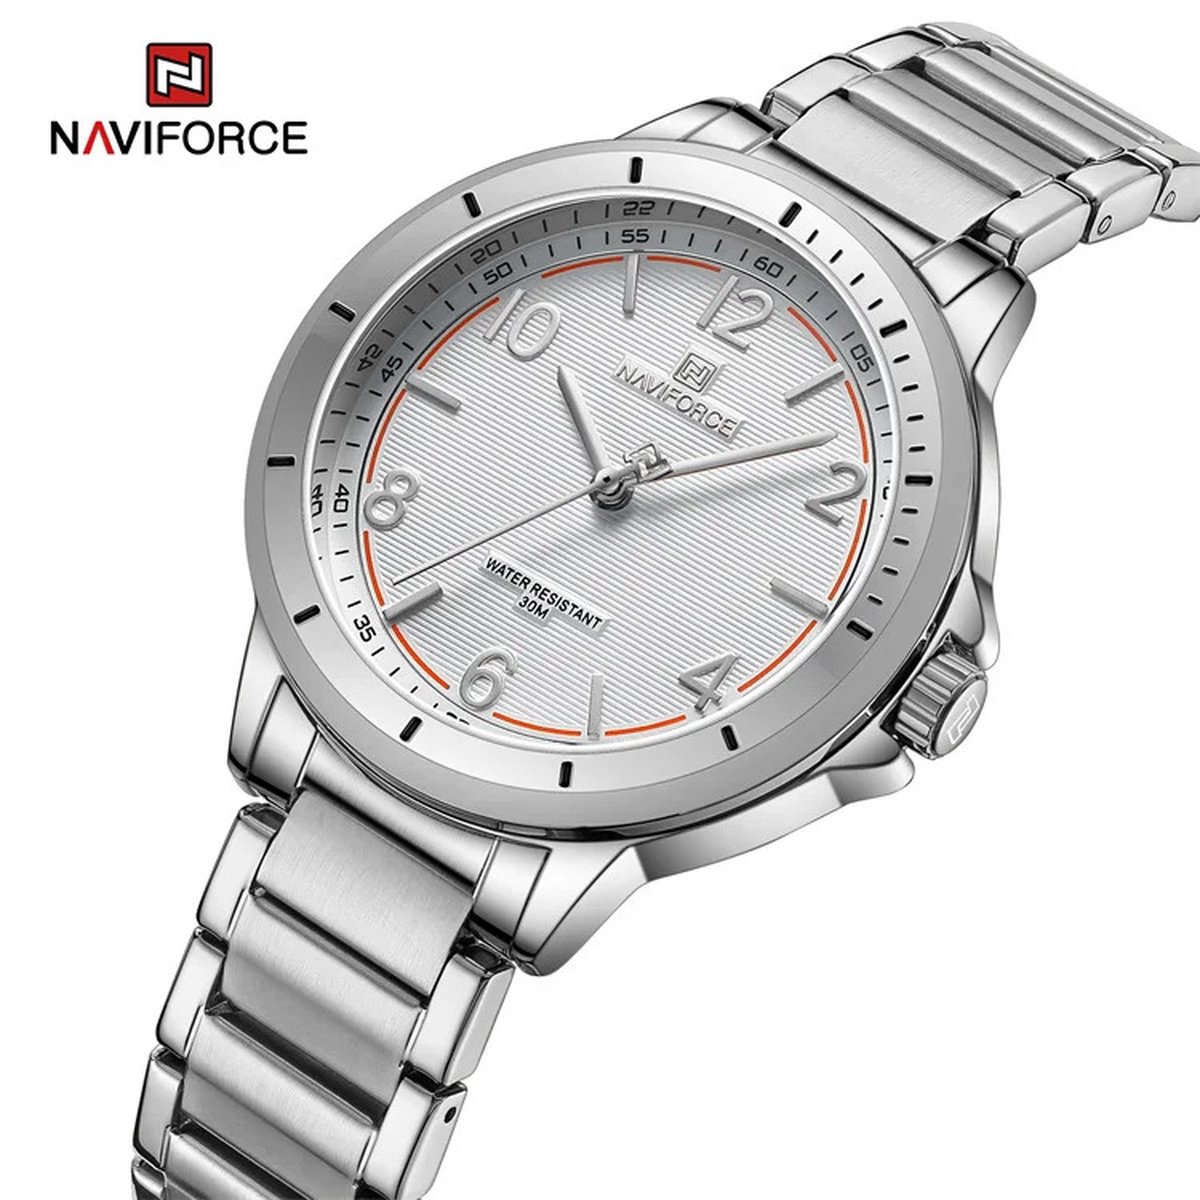 NAVIFORCE horloge met zilveren stalen polsband, witte wijzerplaat, zilveren horlogekast en zilveren wijzers, voor dames met stijl ( model 5021 SWS )